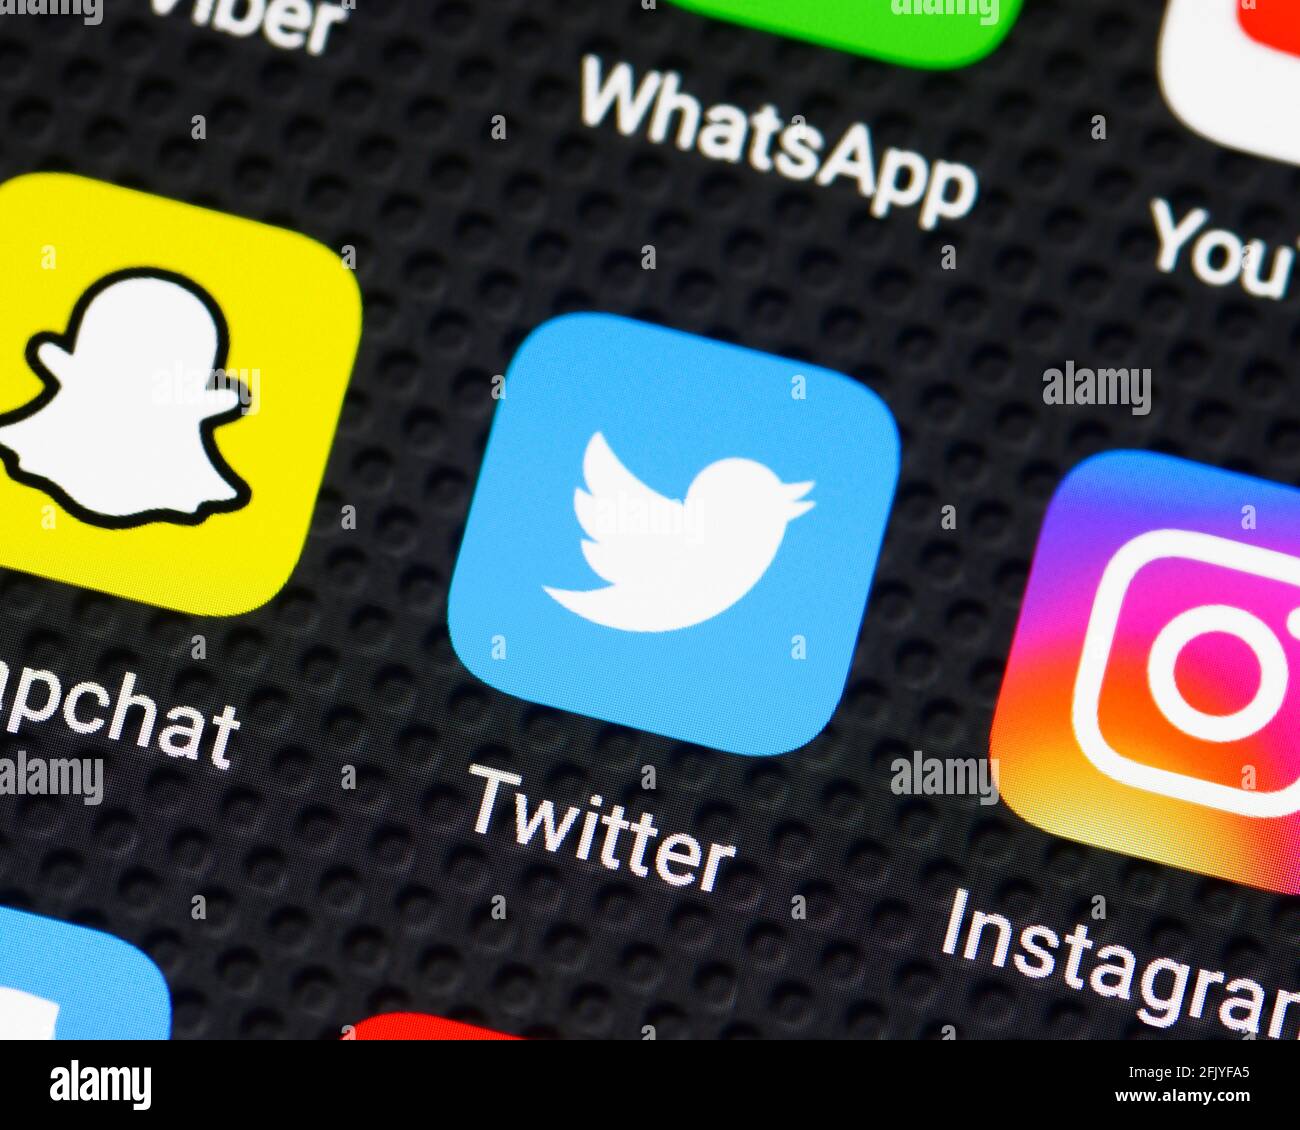 Icône d'application Twitter sur un smartphone, gros plan Banque D'Images